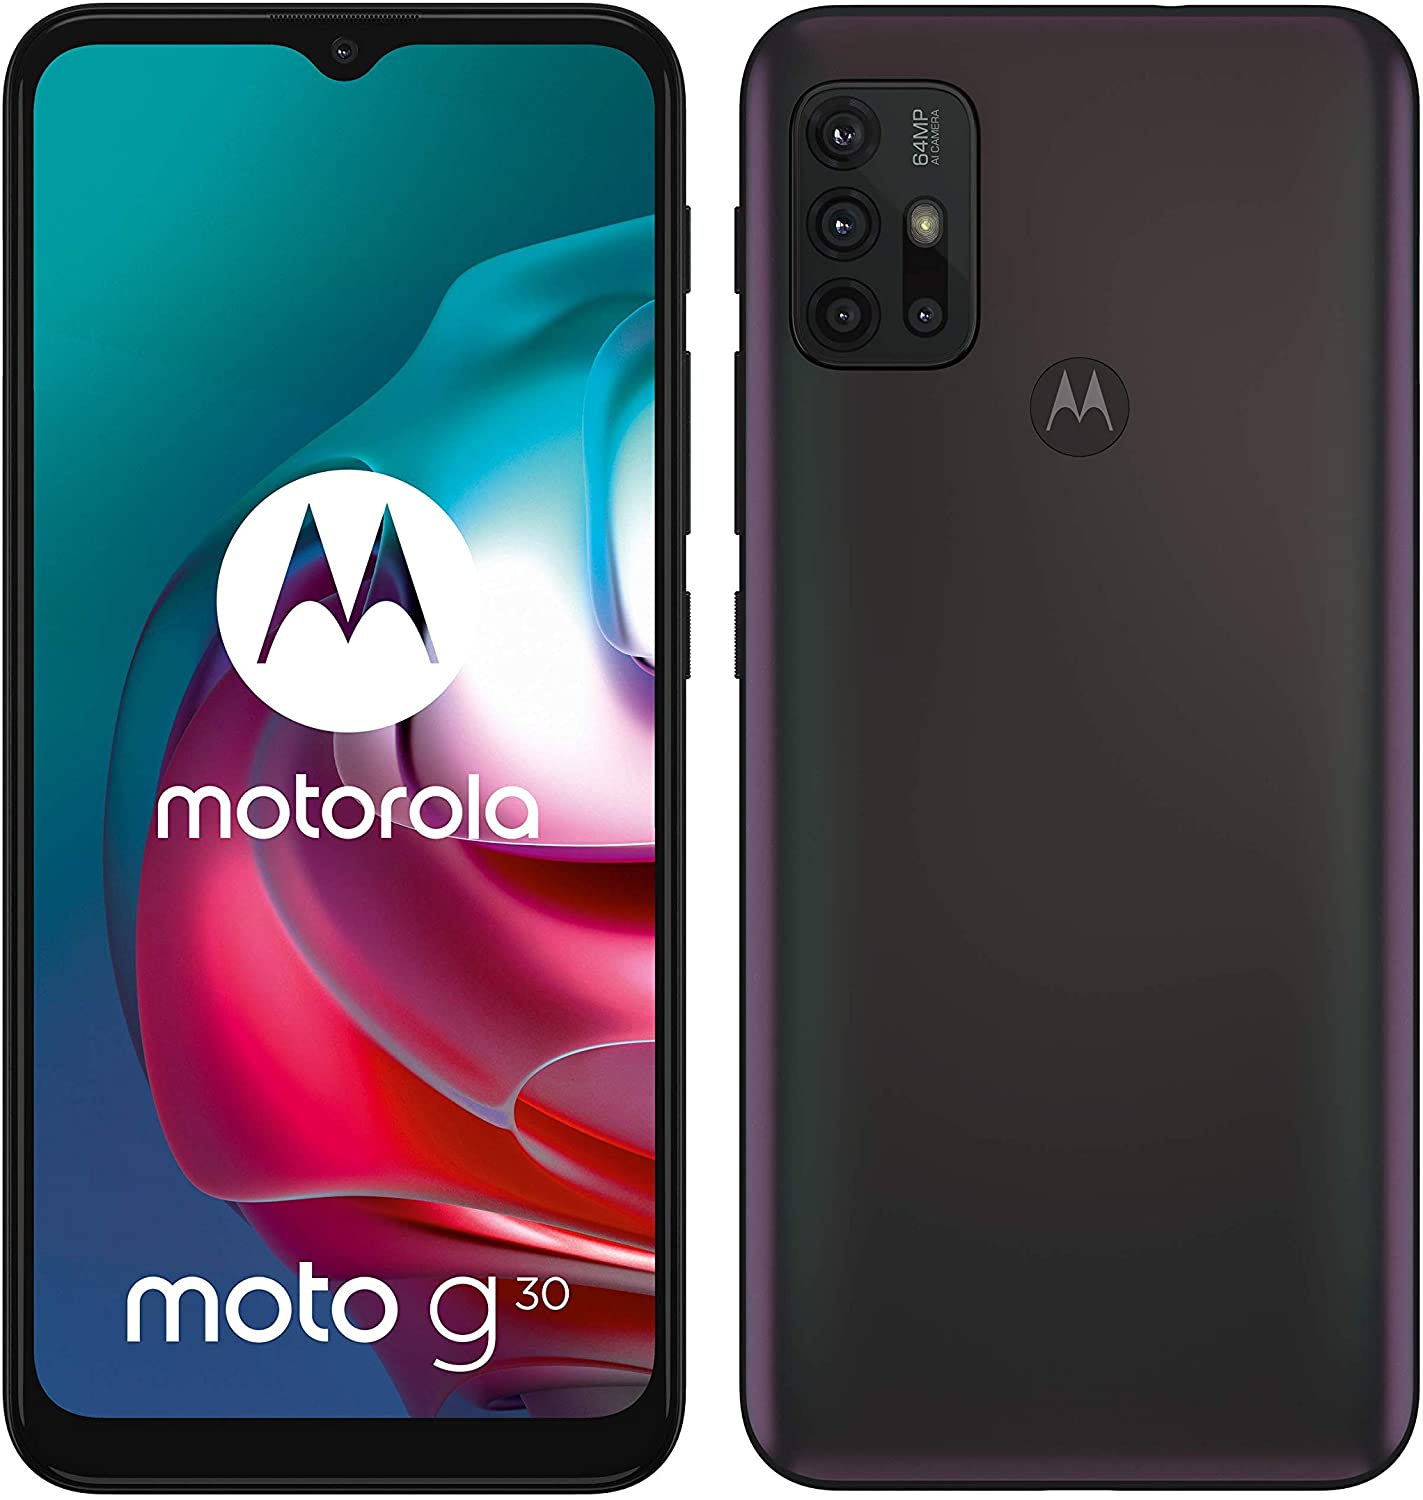 Music and ringing do not work Motorola Moto G30